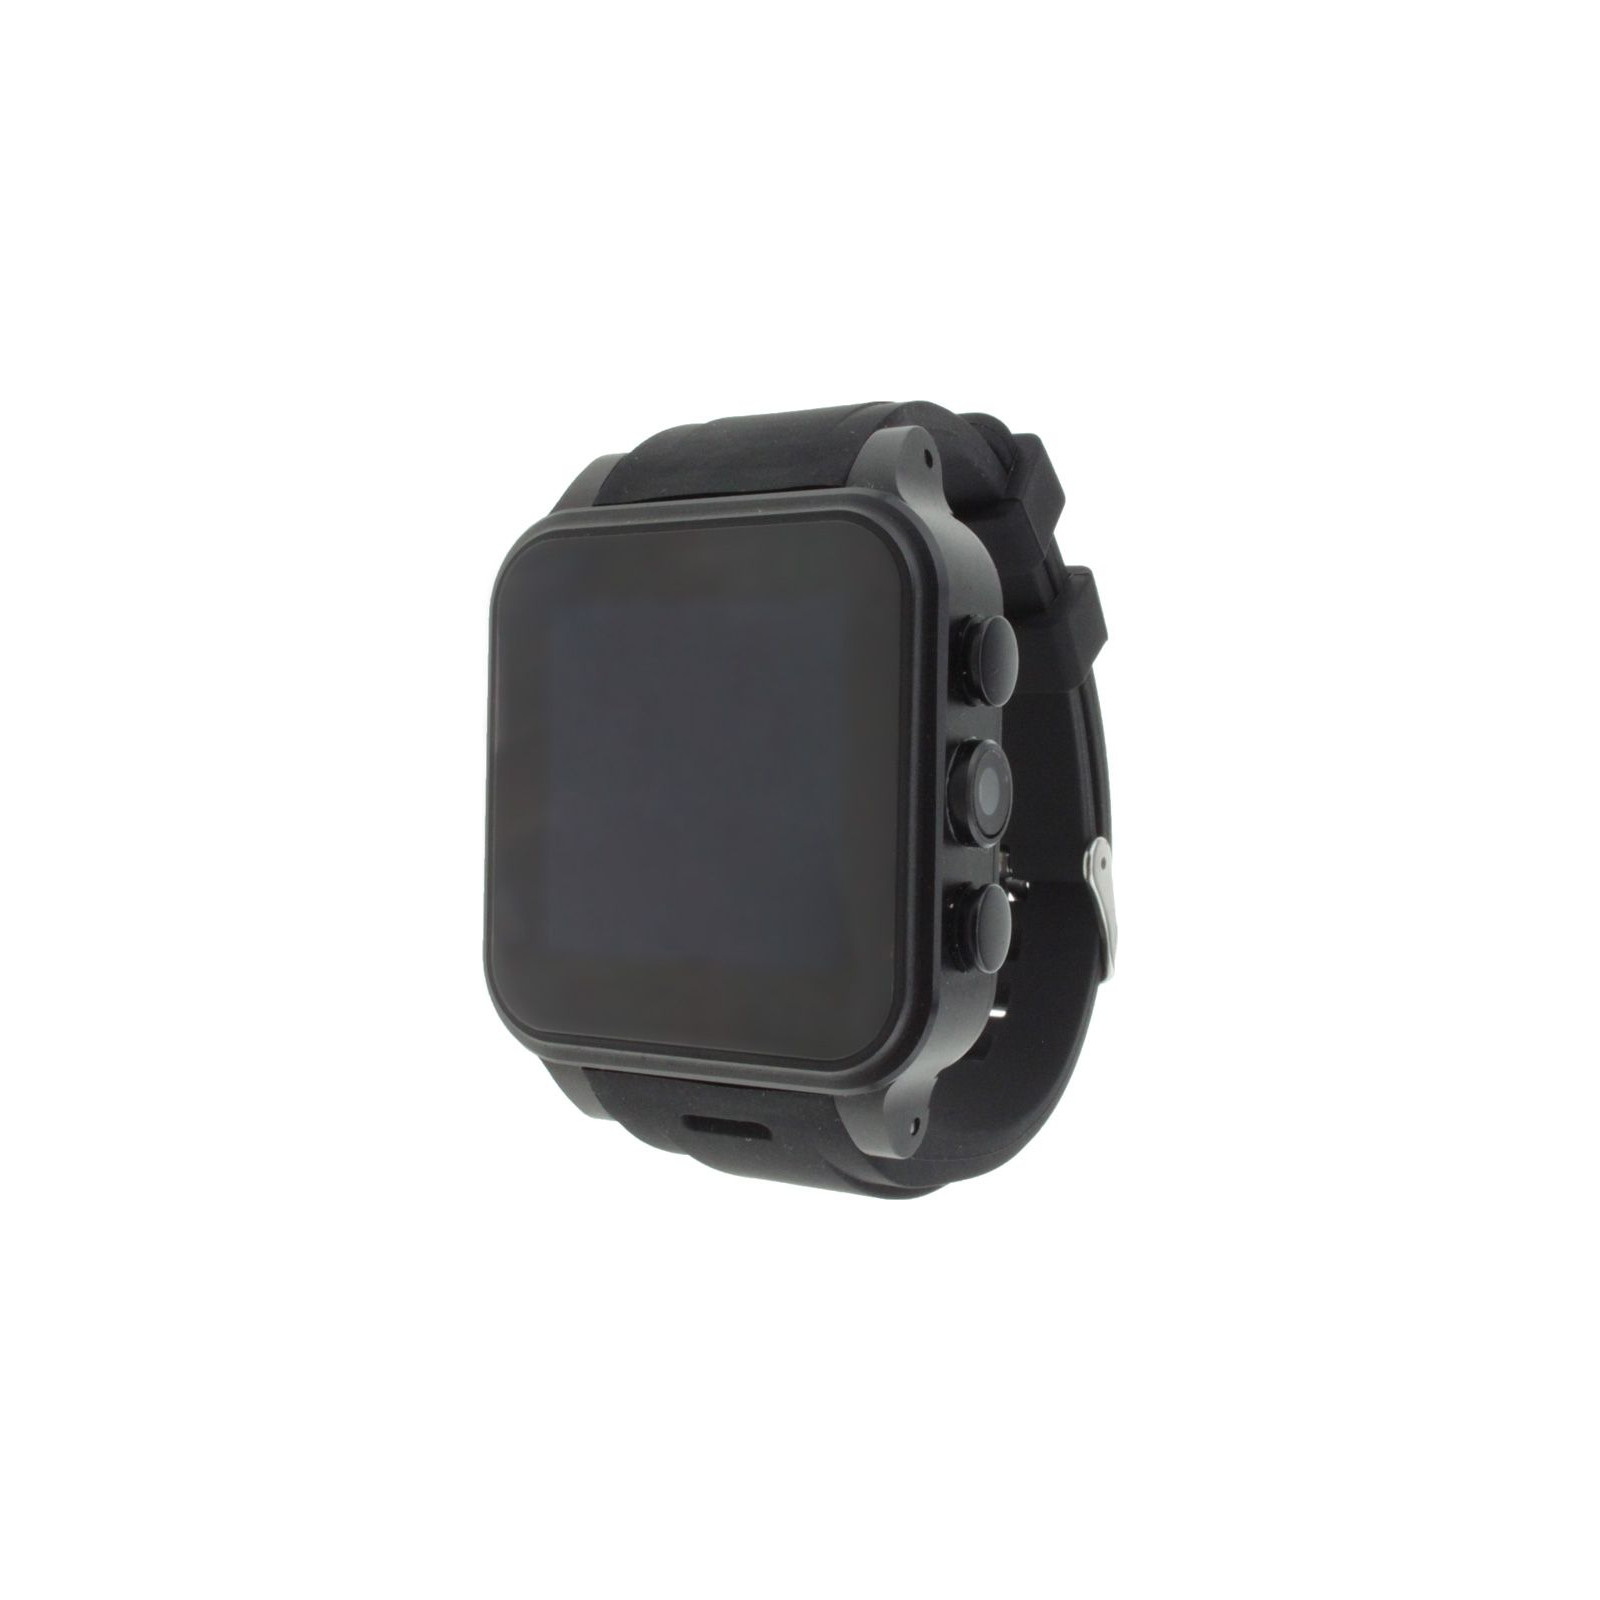 Смарт-часы UWatch PW-308S Black (F_55464)